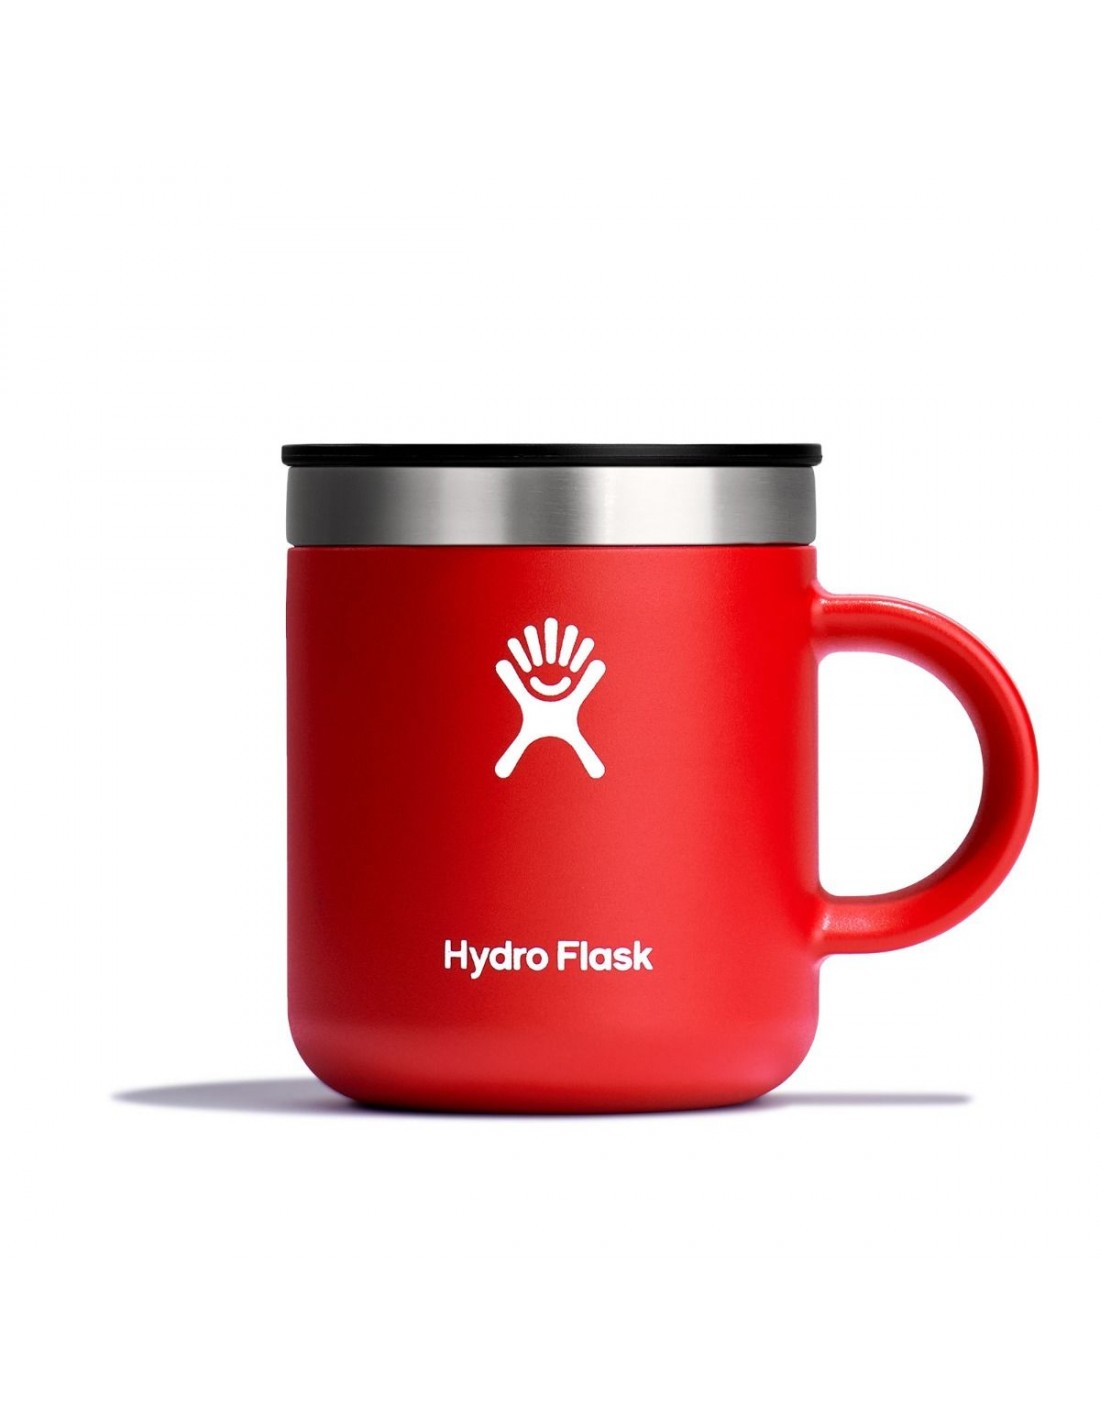 Hydro Flask 6 oz (177ml) Coffee Mug, goji von Hydro Flask